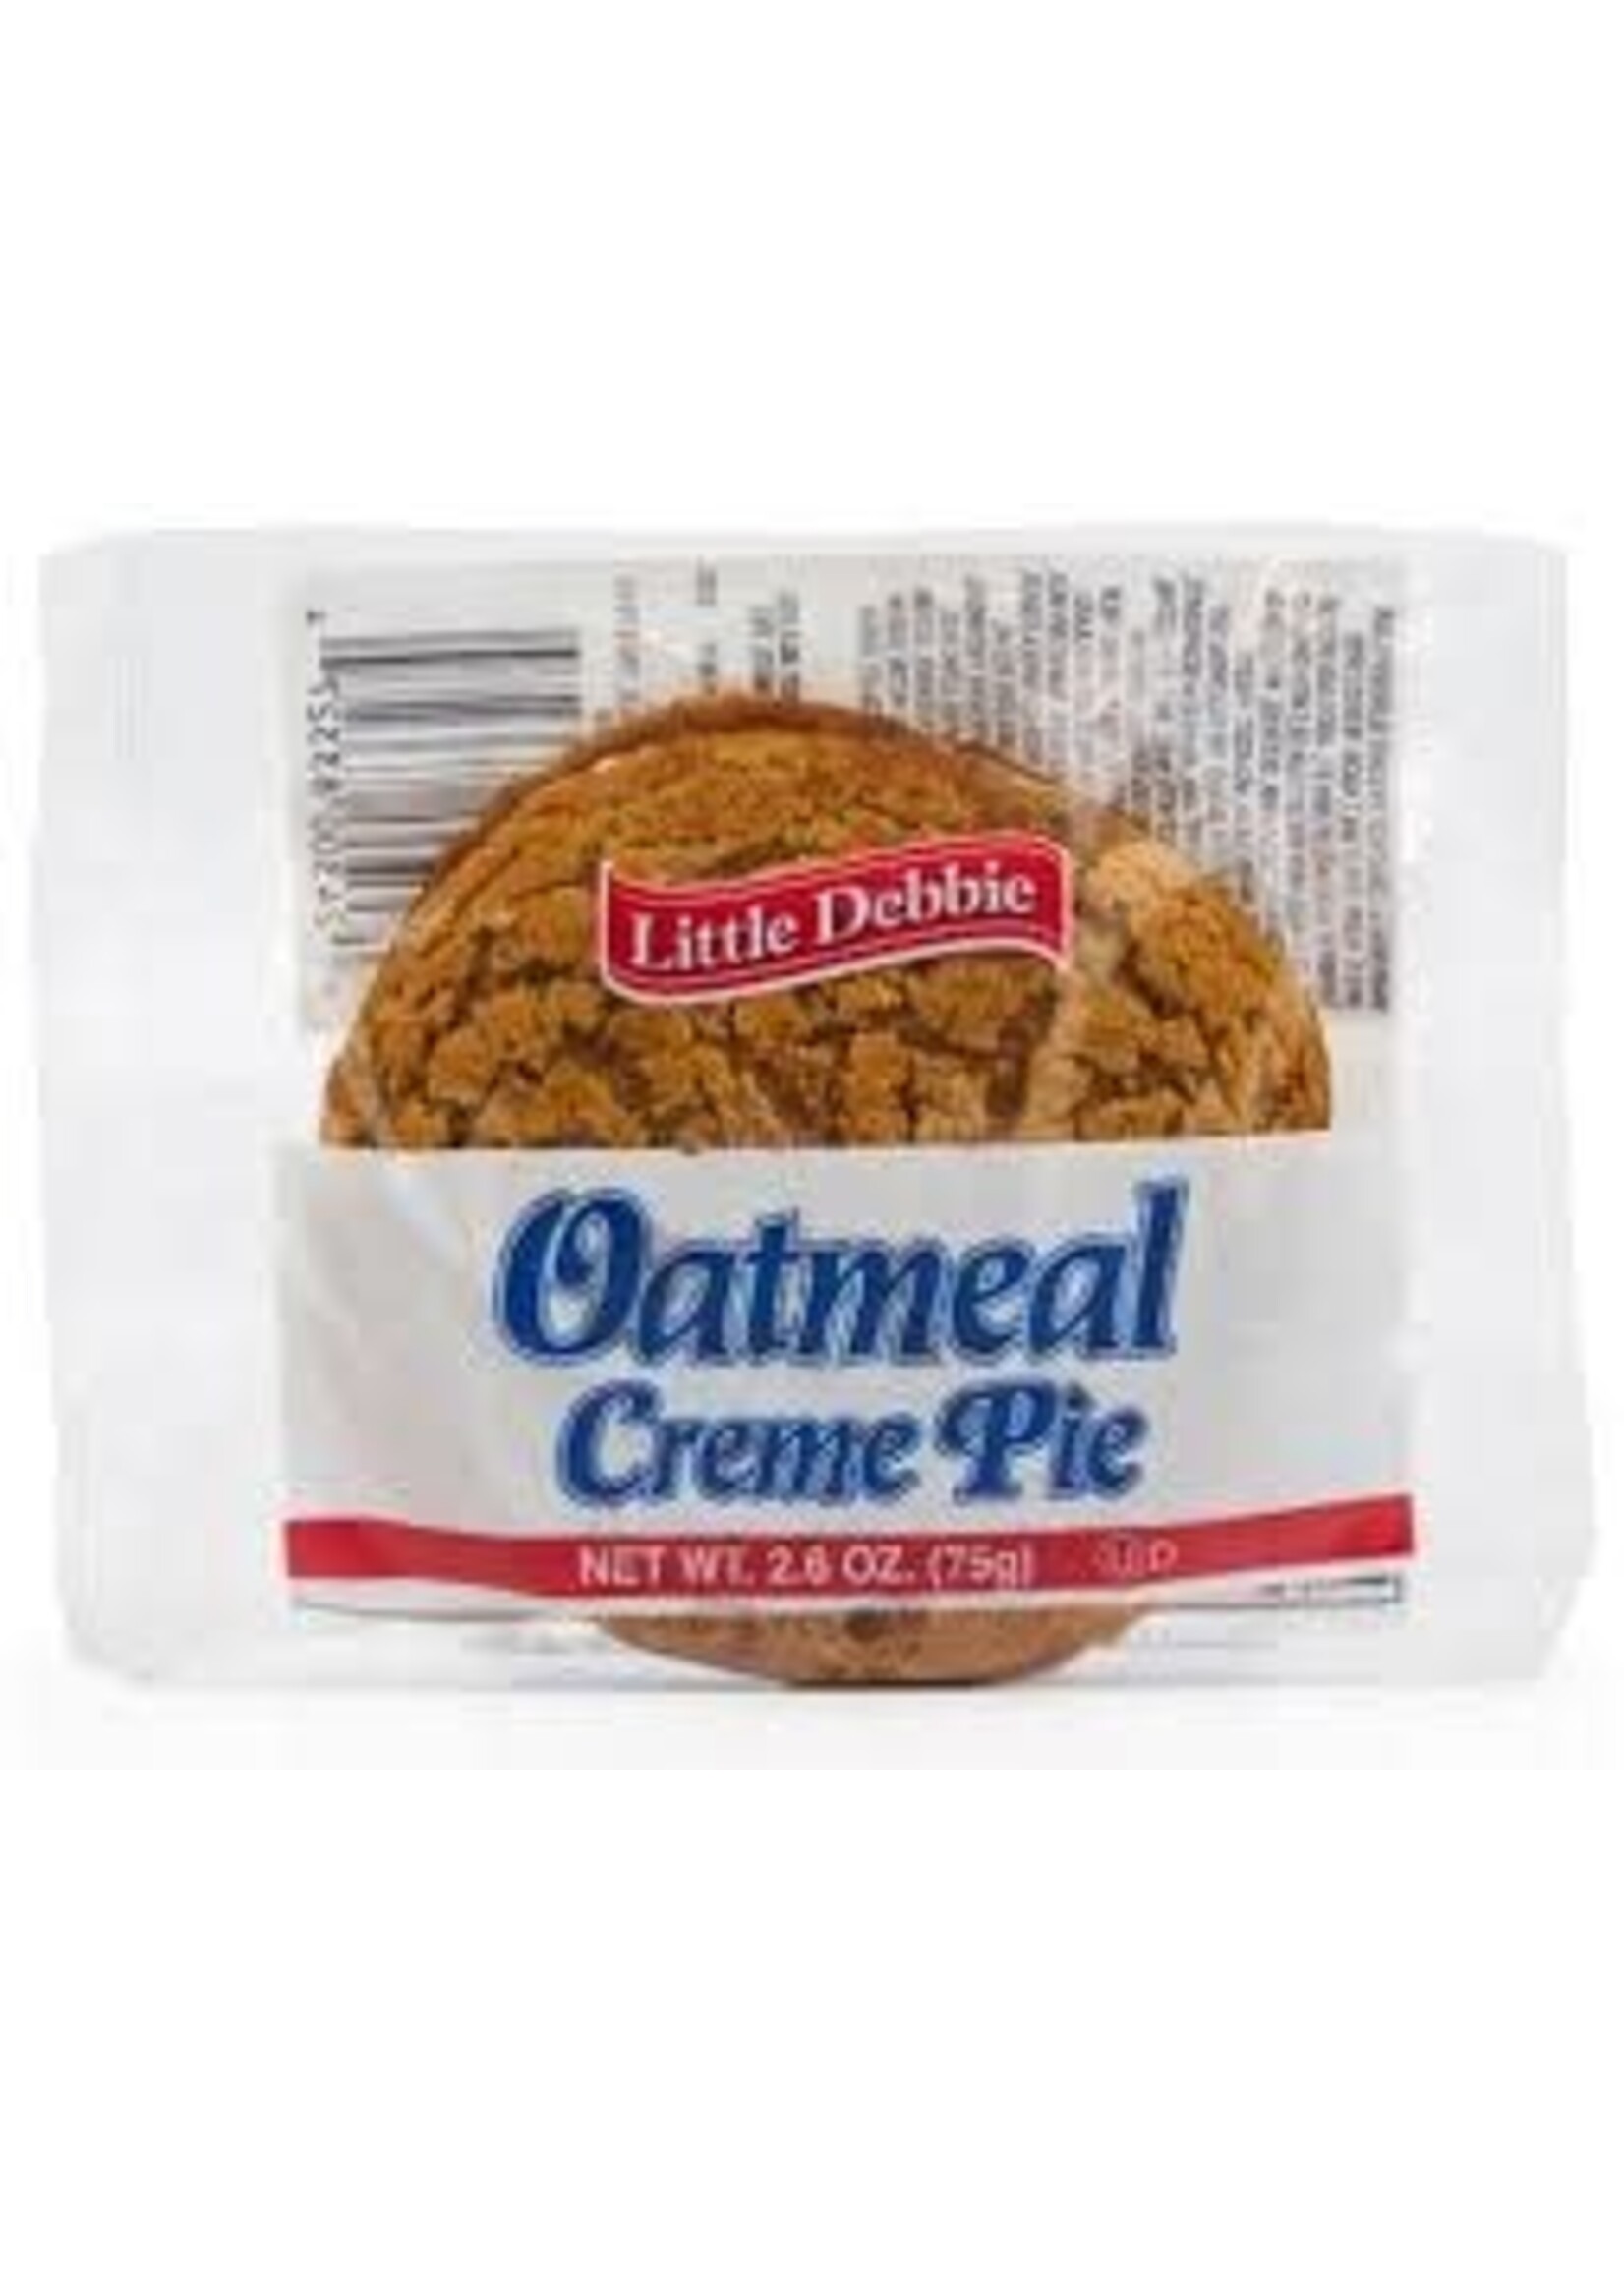 Little Debbie Oatmeal Cream PIE